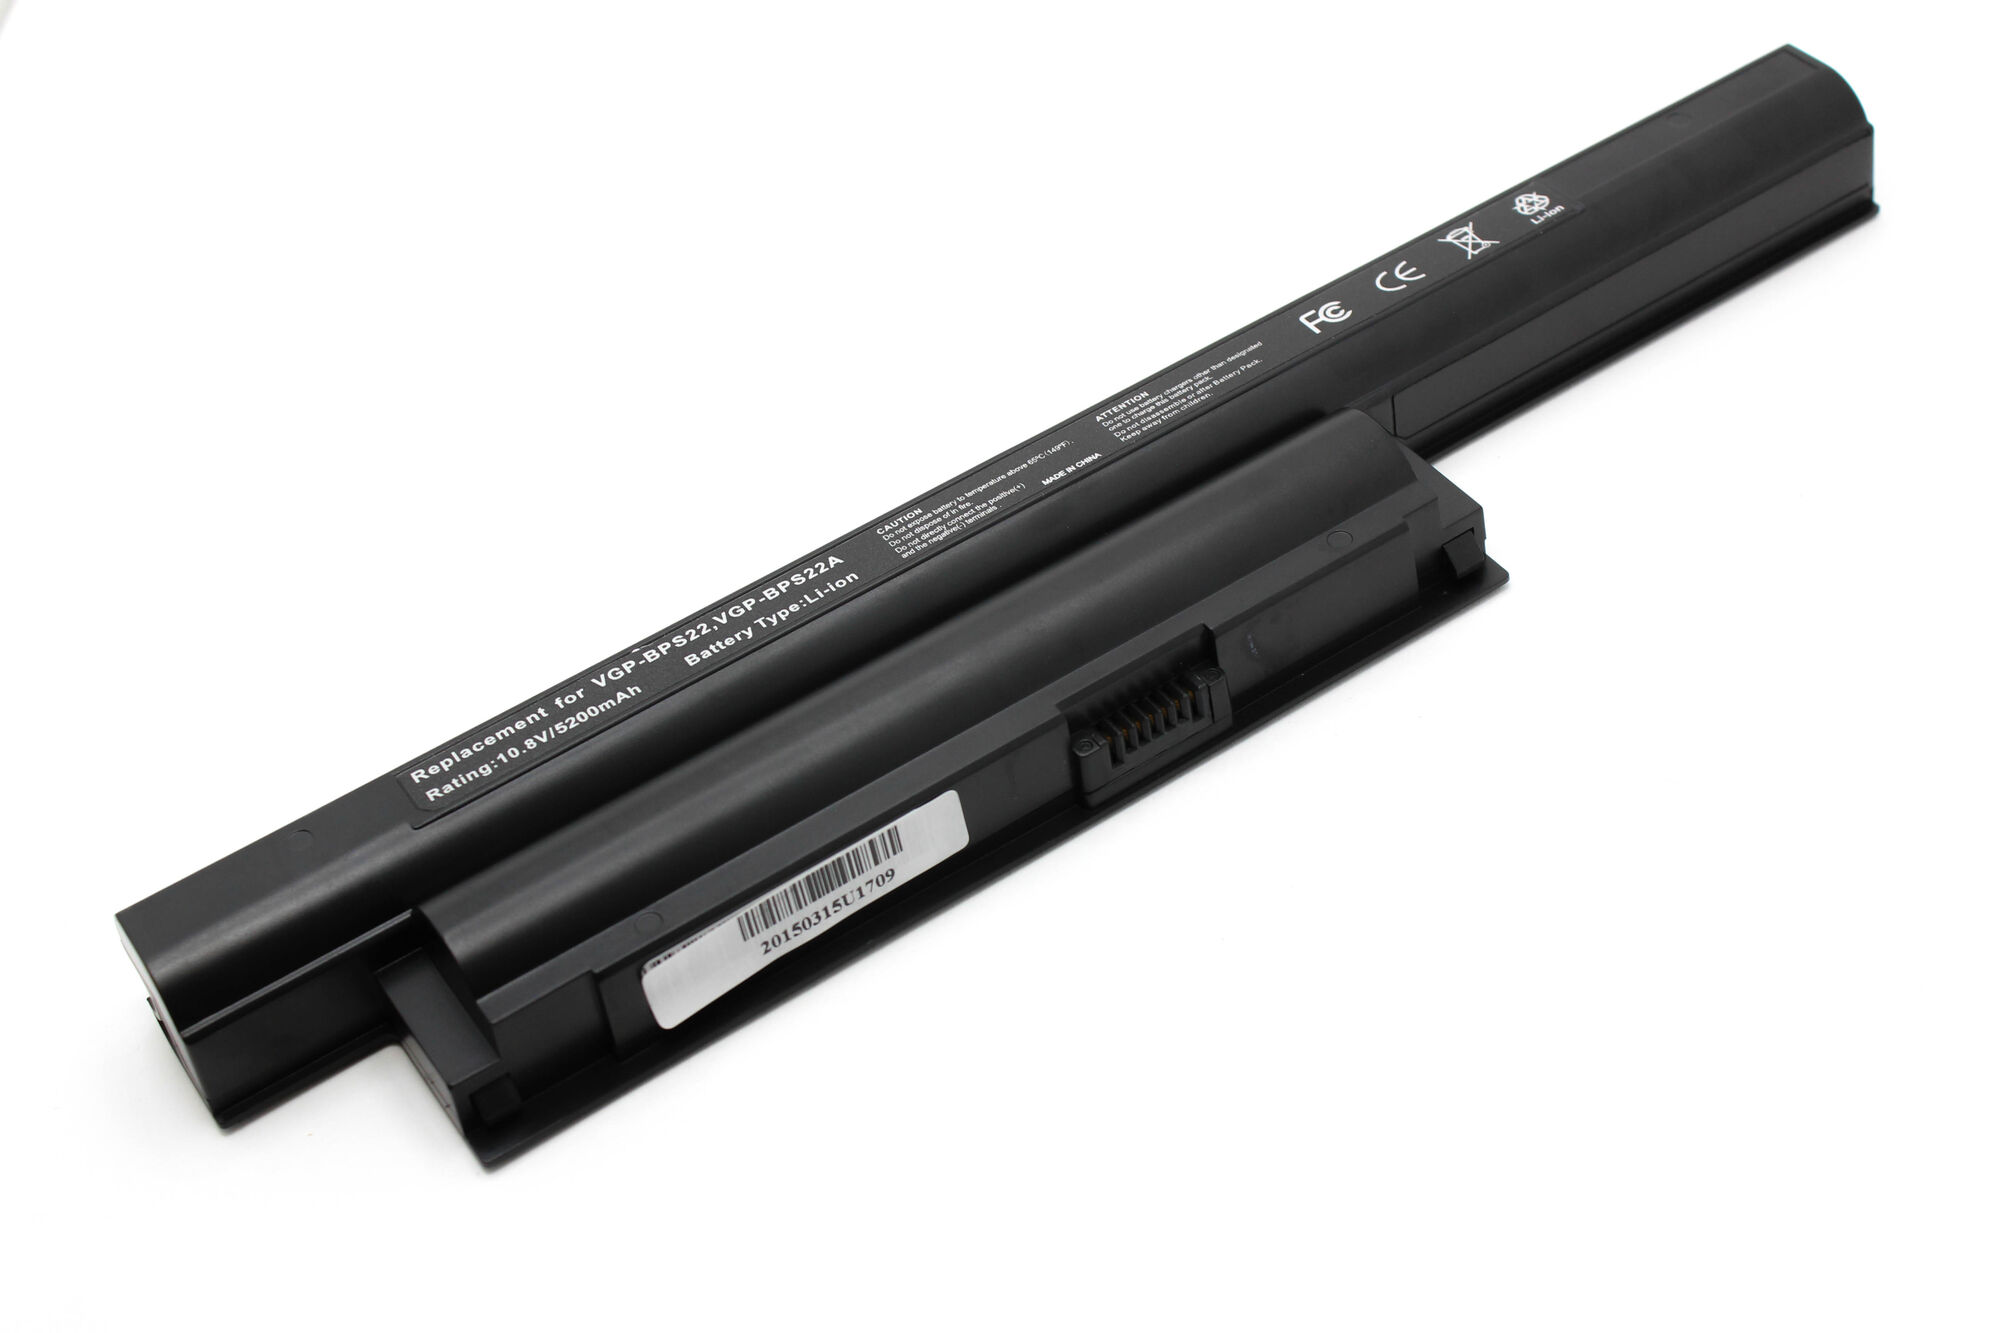 Аккумулятор для Sony VAIO VGP-BPS22 Amperin (11.1V 4400mAh)